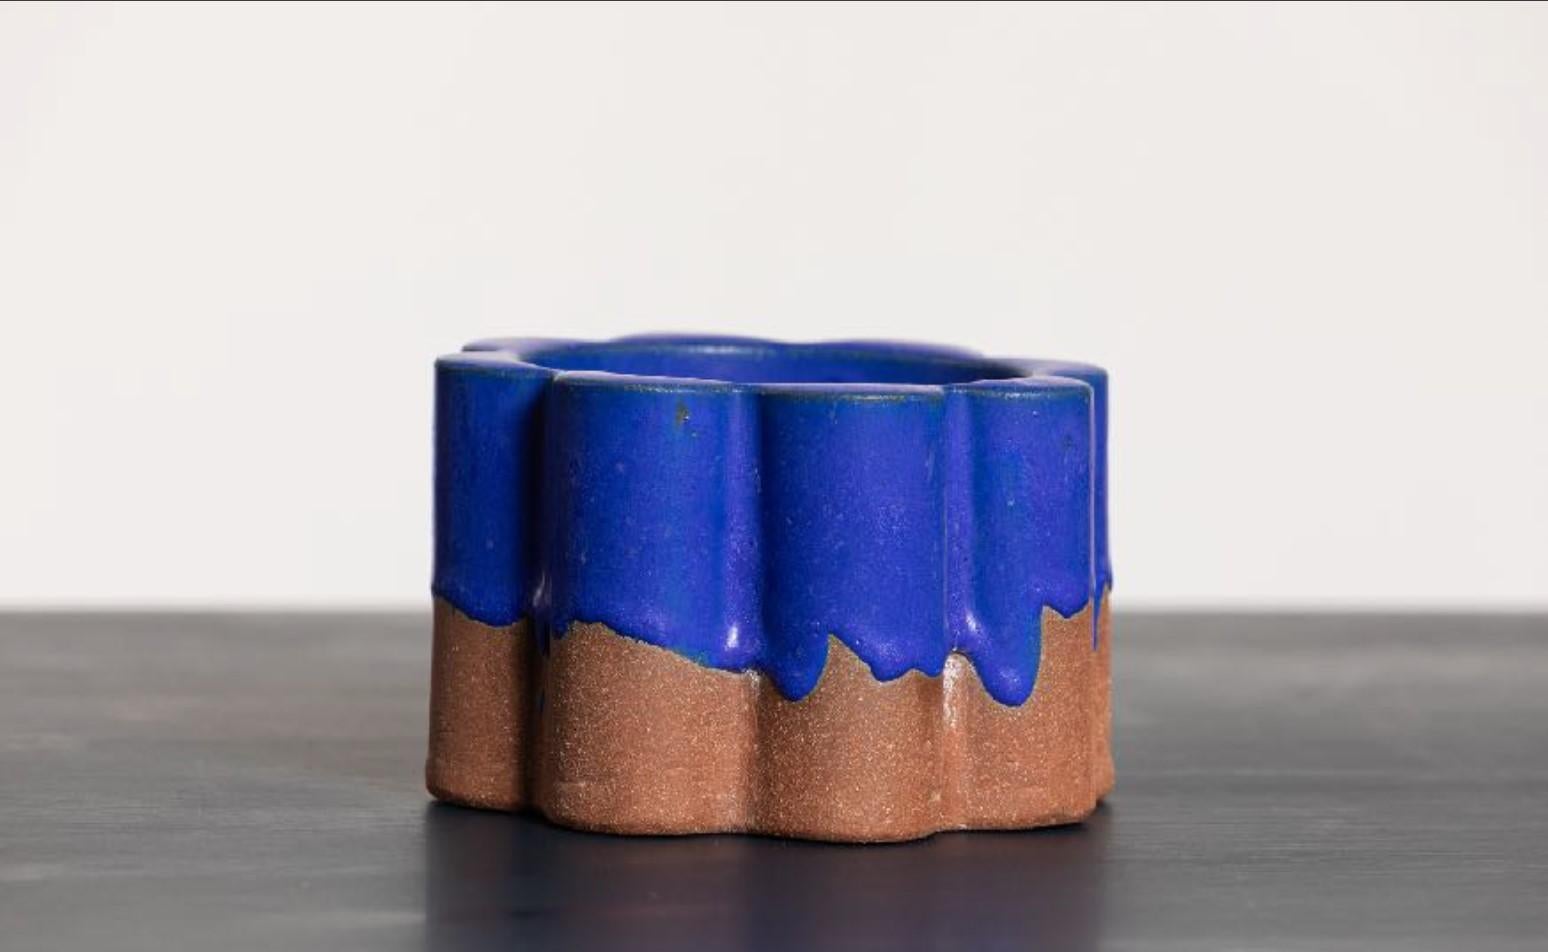 Sojakerze inno(s)cent - Blau von Milan Pekar, Amansoycandles
Abmessungen: 15 x 15 x 7 cm
MATERIALIEN: Keramik

Handgefertigt in der Tschechischen Republik. 
Auch in verschiedenen Farben erhältlich.

Der Duft von Incense (K.K. Vavrova) ist inspiriert